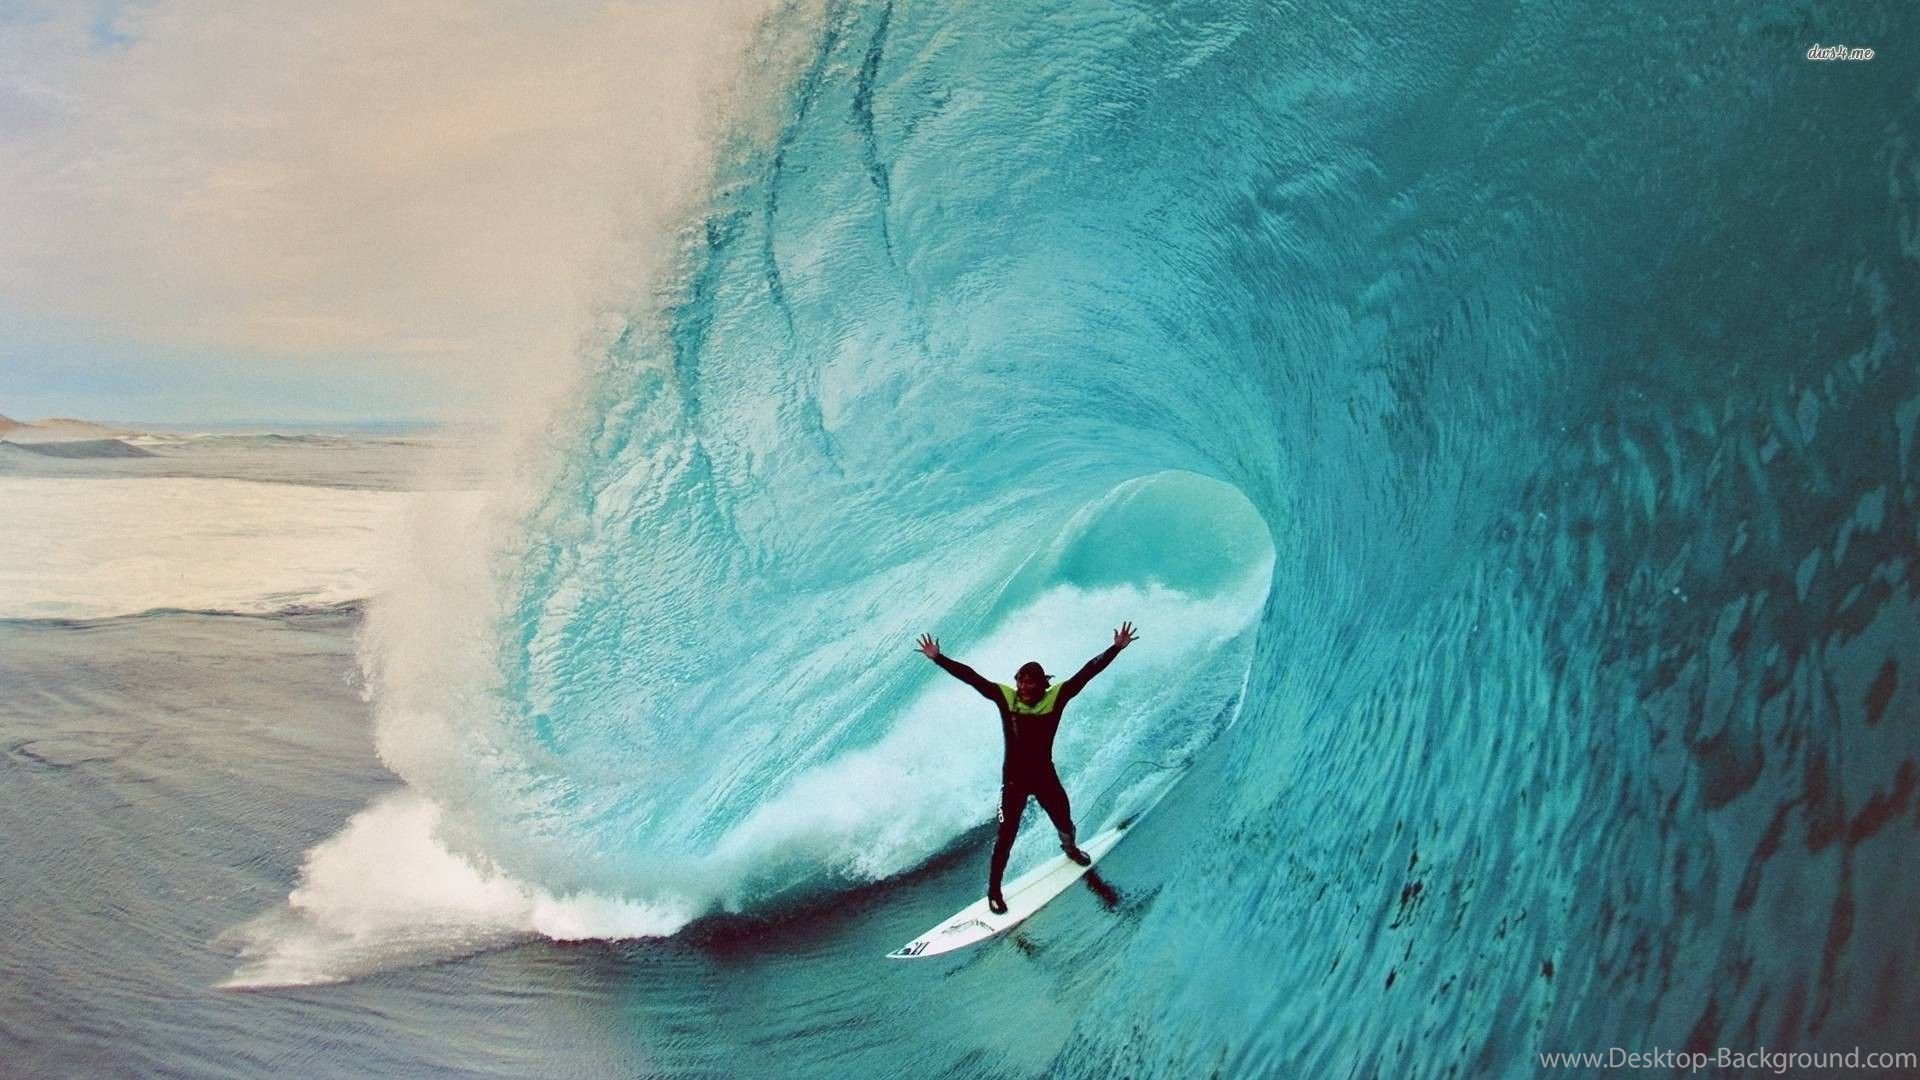 Surf Wallpaper For Desktop 77 Images